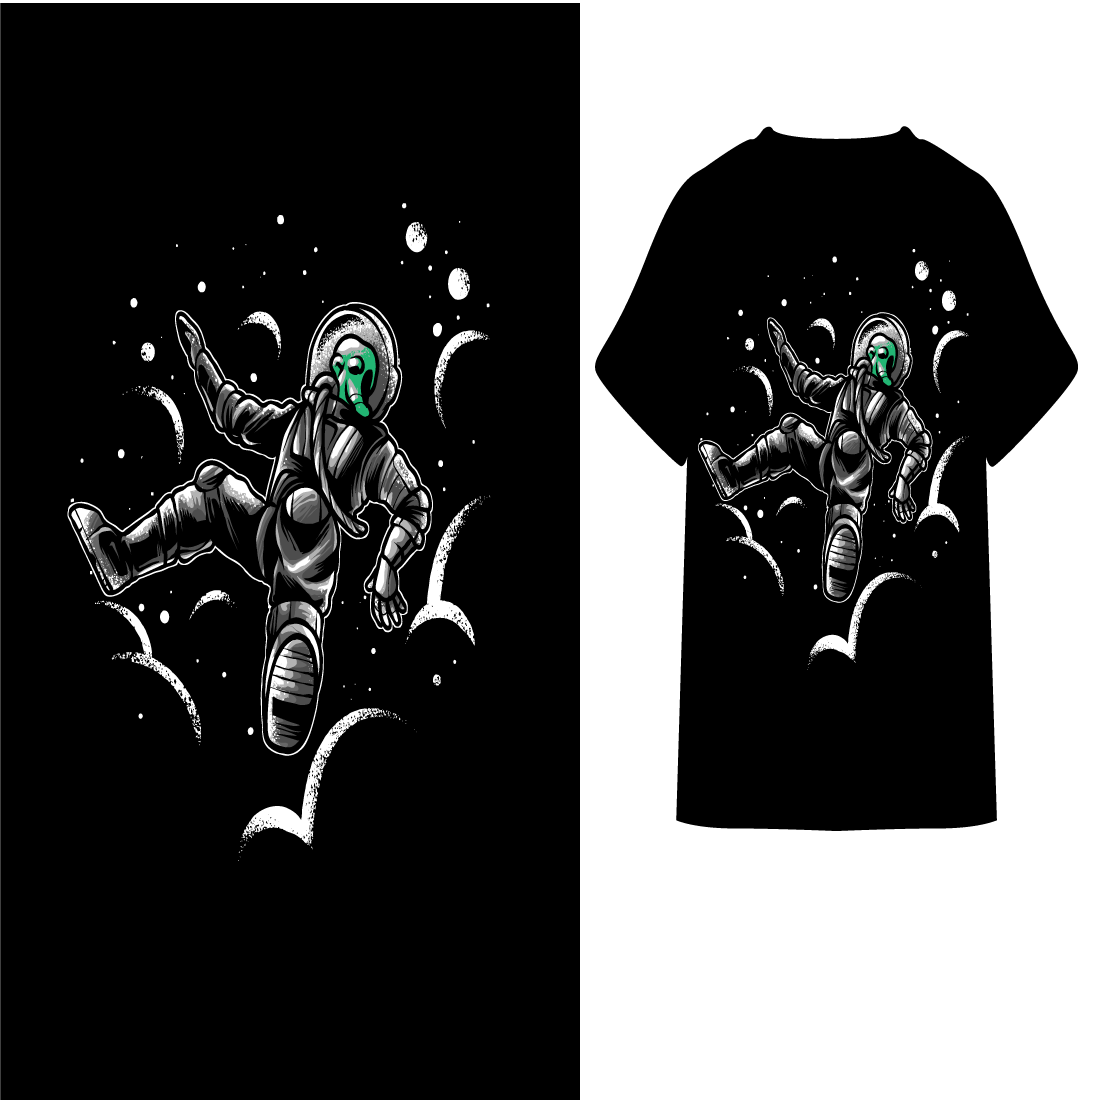 alien astronaut t-shirt preview image.